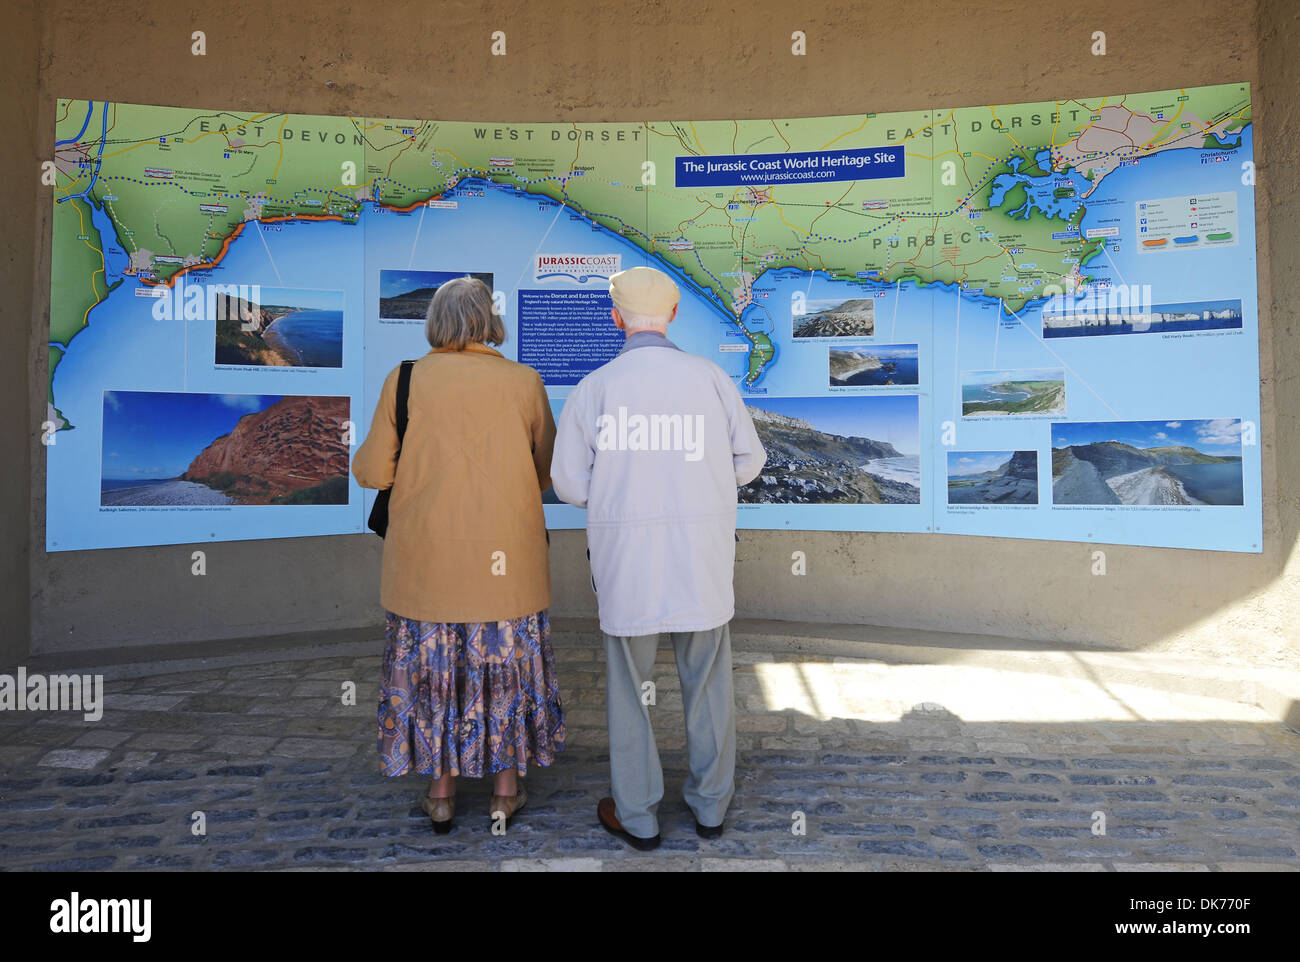 Vieux couple regardez une carte à Lyme Regis, dans le Dorset, Angleterre, Royaume-Uni Banque D'Images